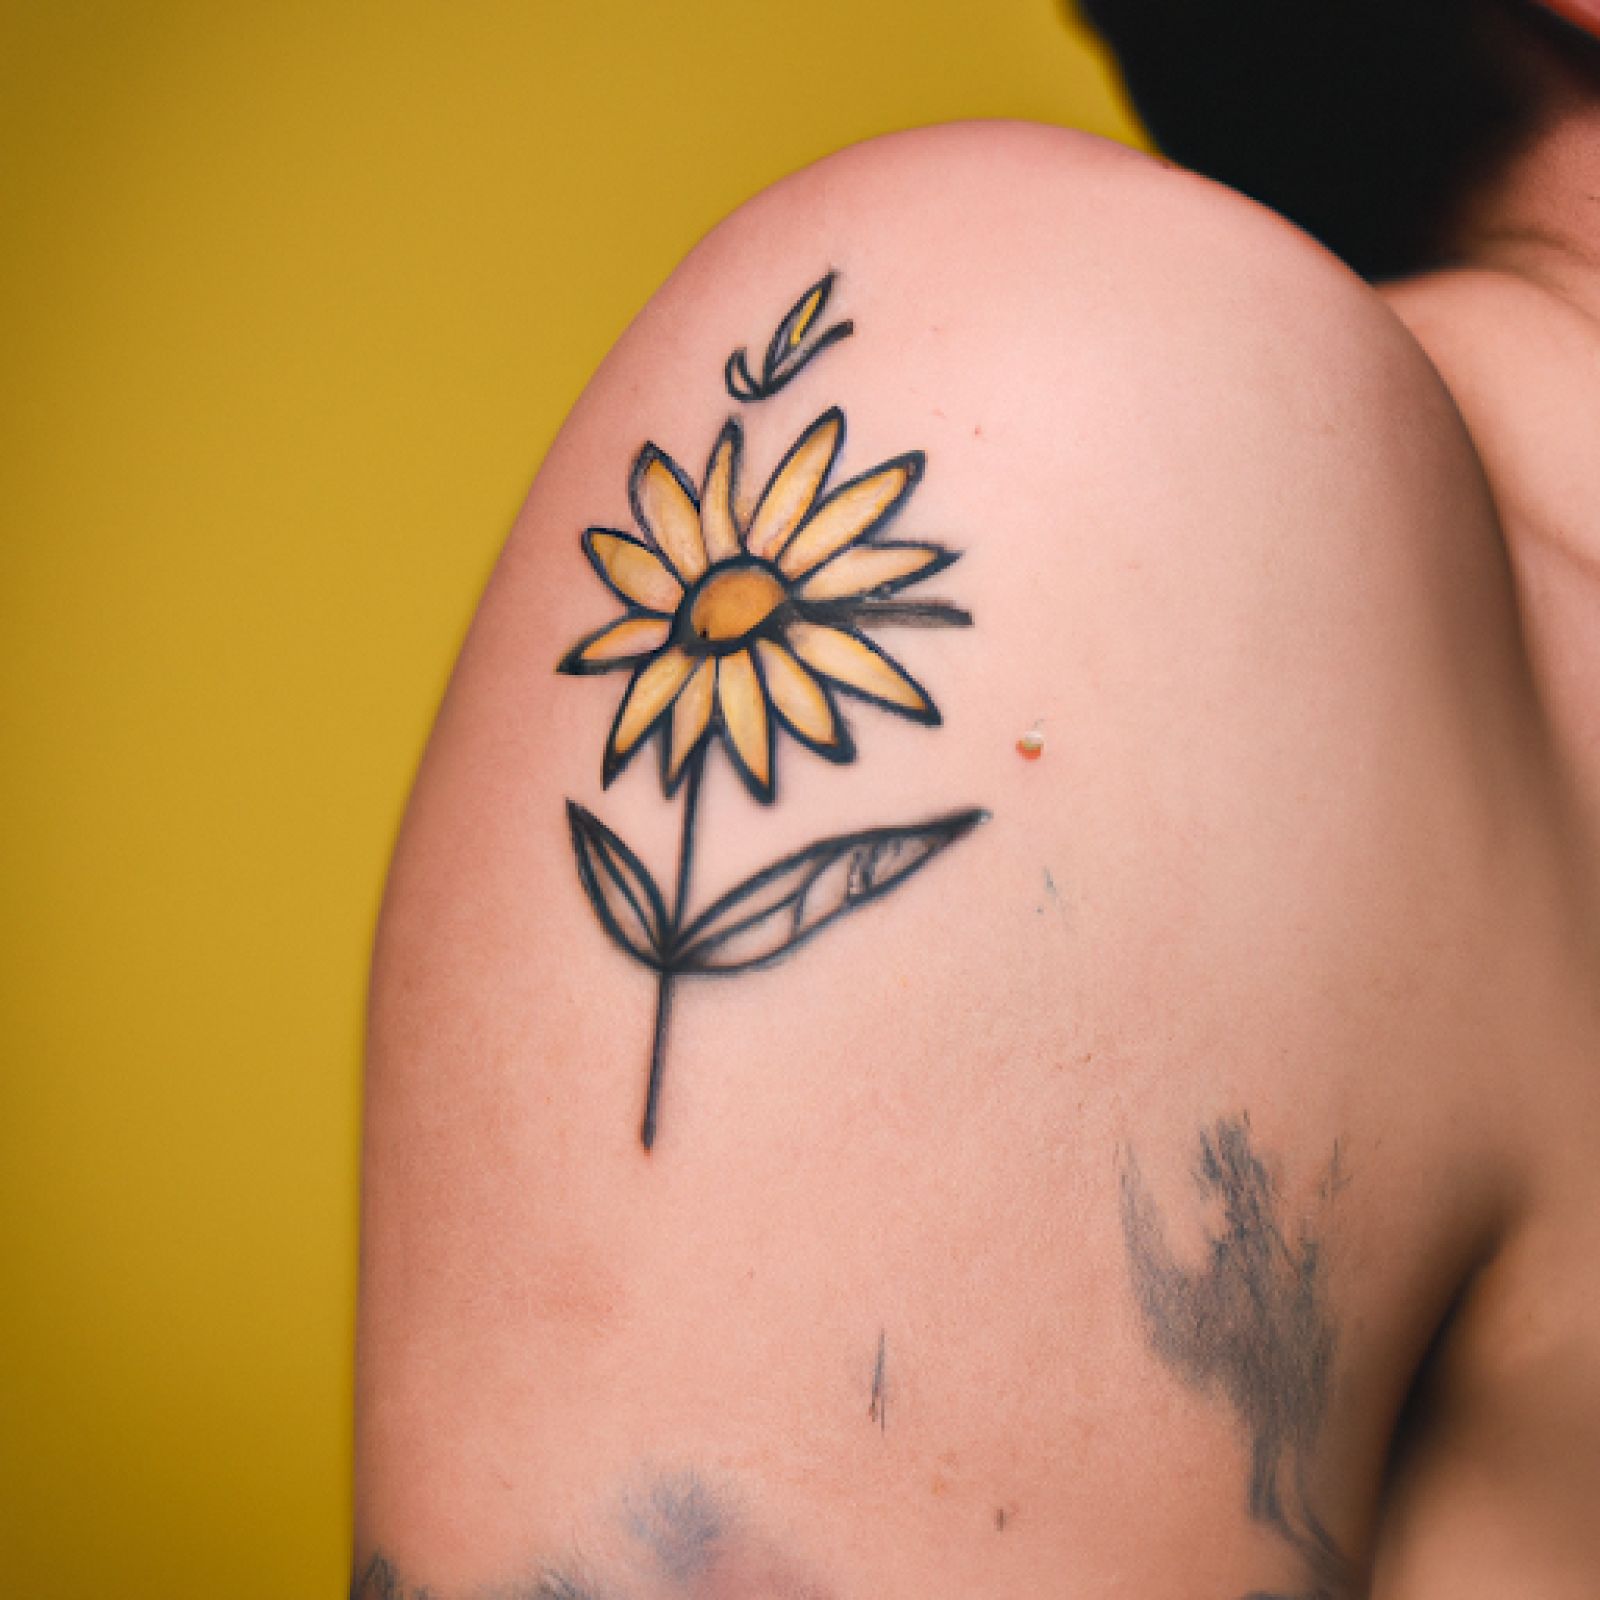 Flower tattoo on shoulder for women